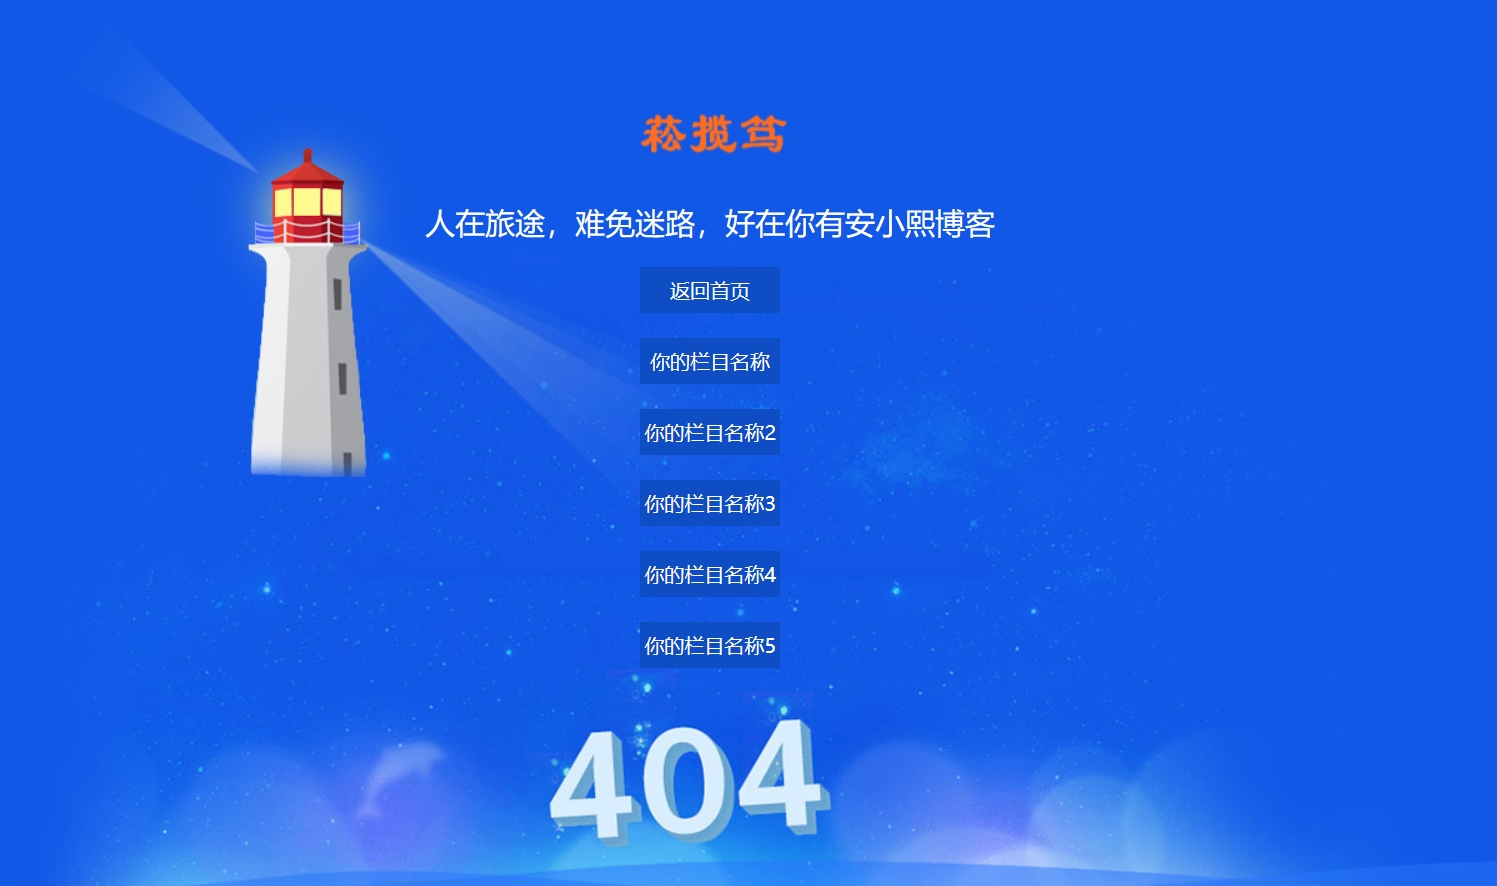 
仿携程旅行网404页面效果html源码
-安小熙博客
-第1
张图片